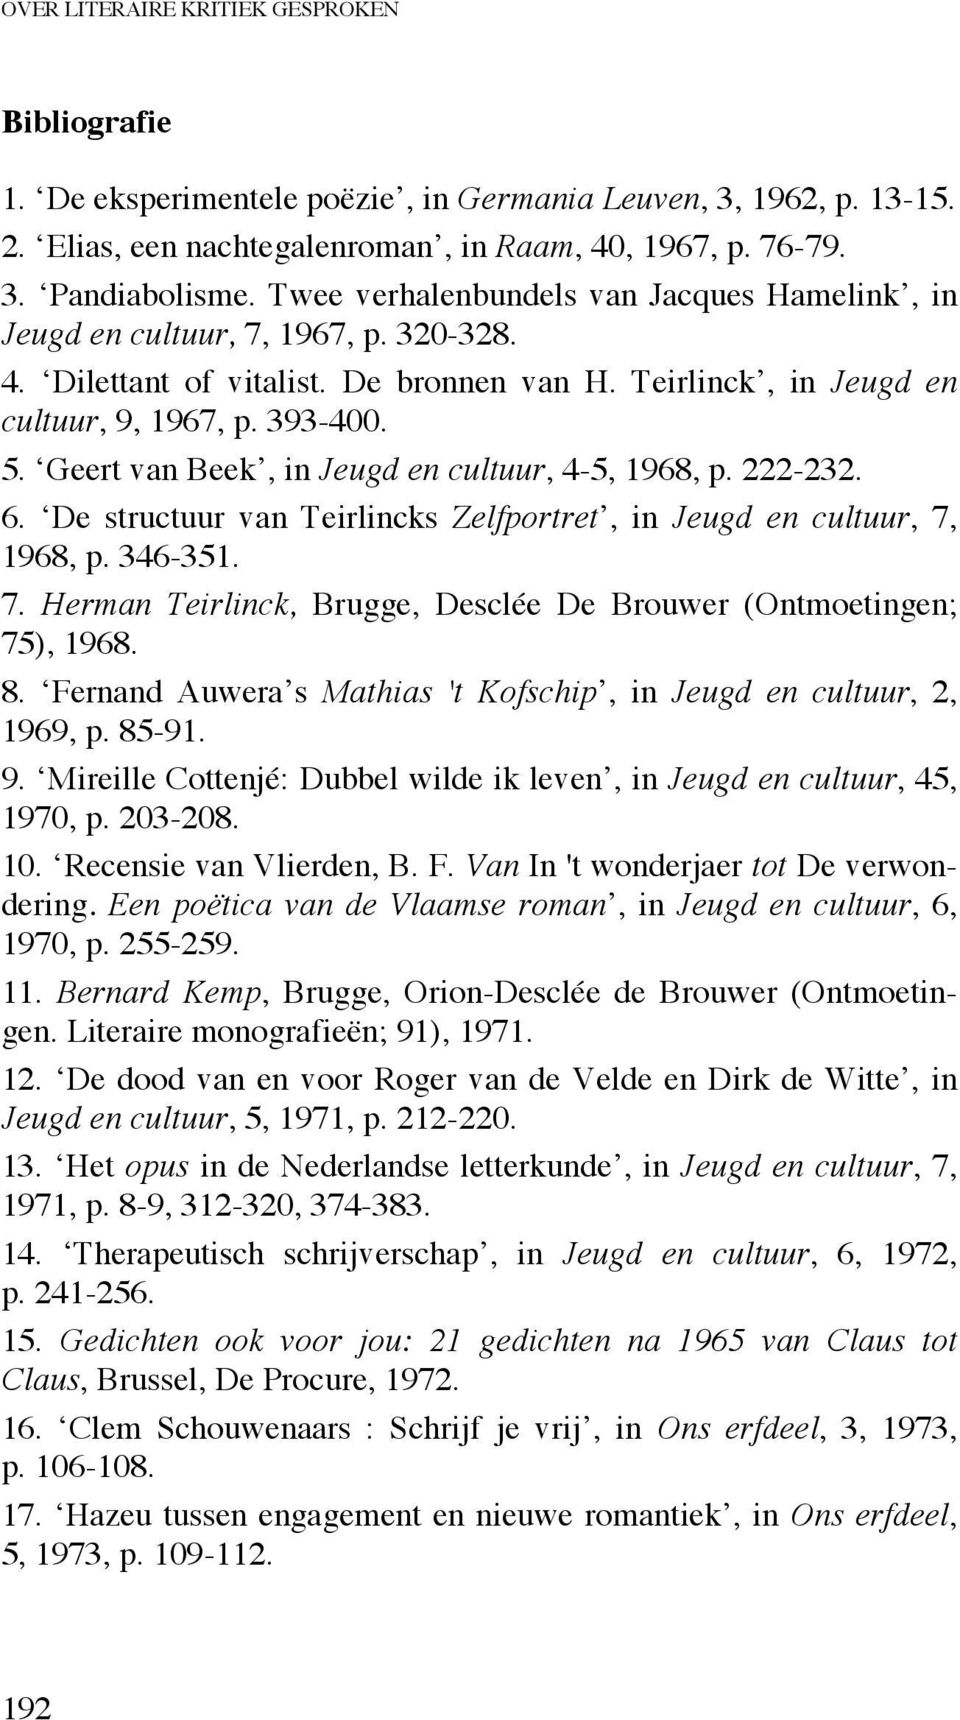 Geert van Beek, in Jeugd en cultuur, 4-5, 1968, p. 222-232. 6. De structuur van Teirlincks Zelfportret, in Jeugd en cultuur, 7, 1968, p. 346-351. 7. Herman Teirlinck, Brugge, Desclée De Brouwer (Ontmoetingen; 75), 1968.